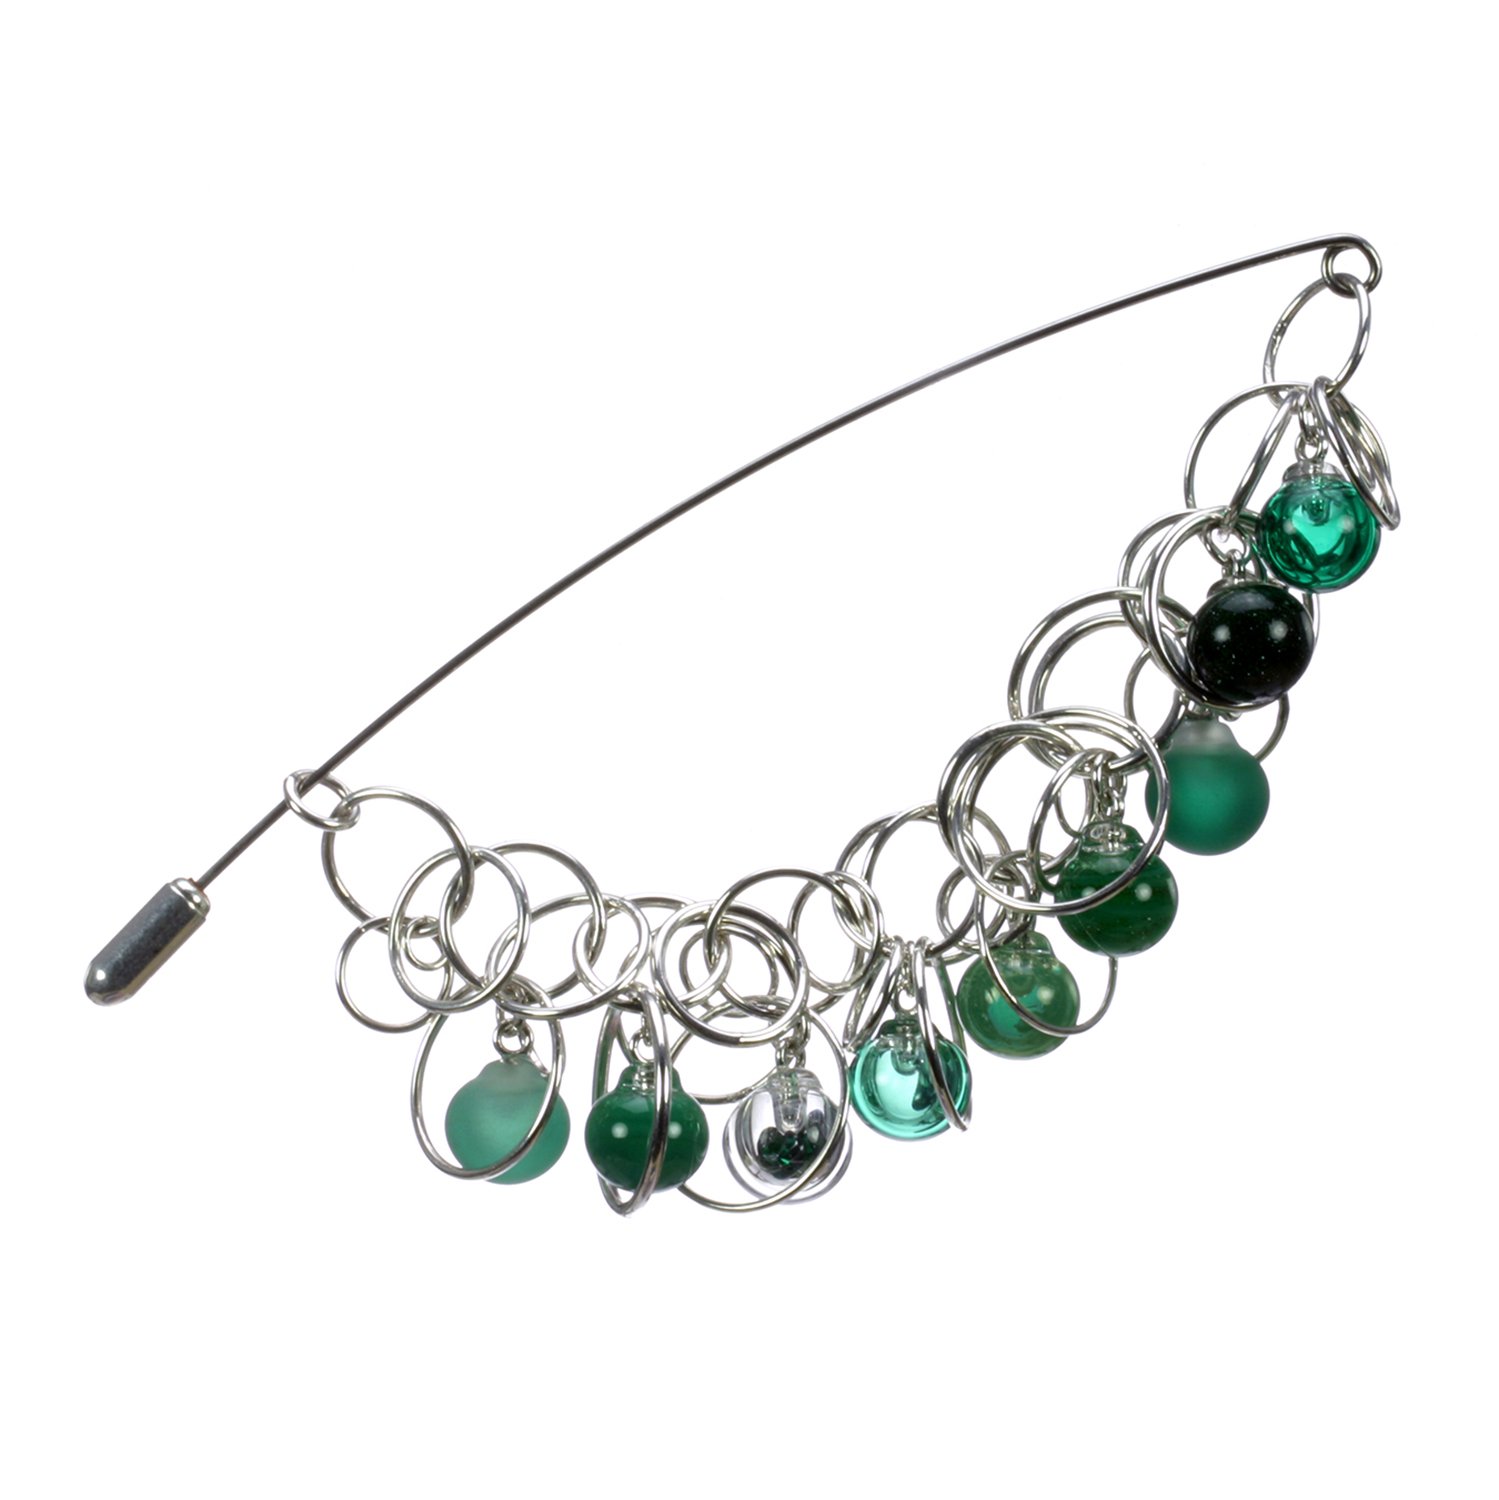 2 Emerald Bubble Chain Pin Charlotte Verity